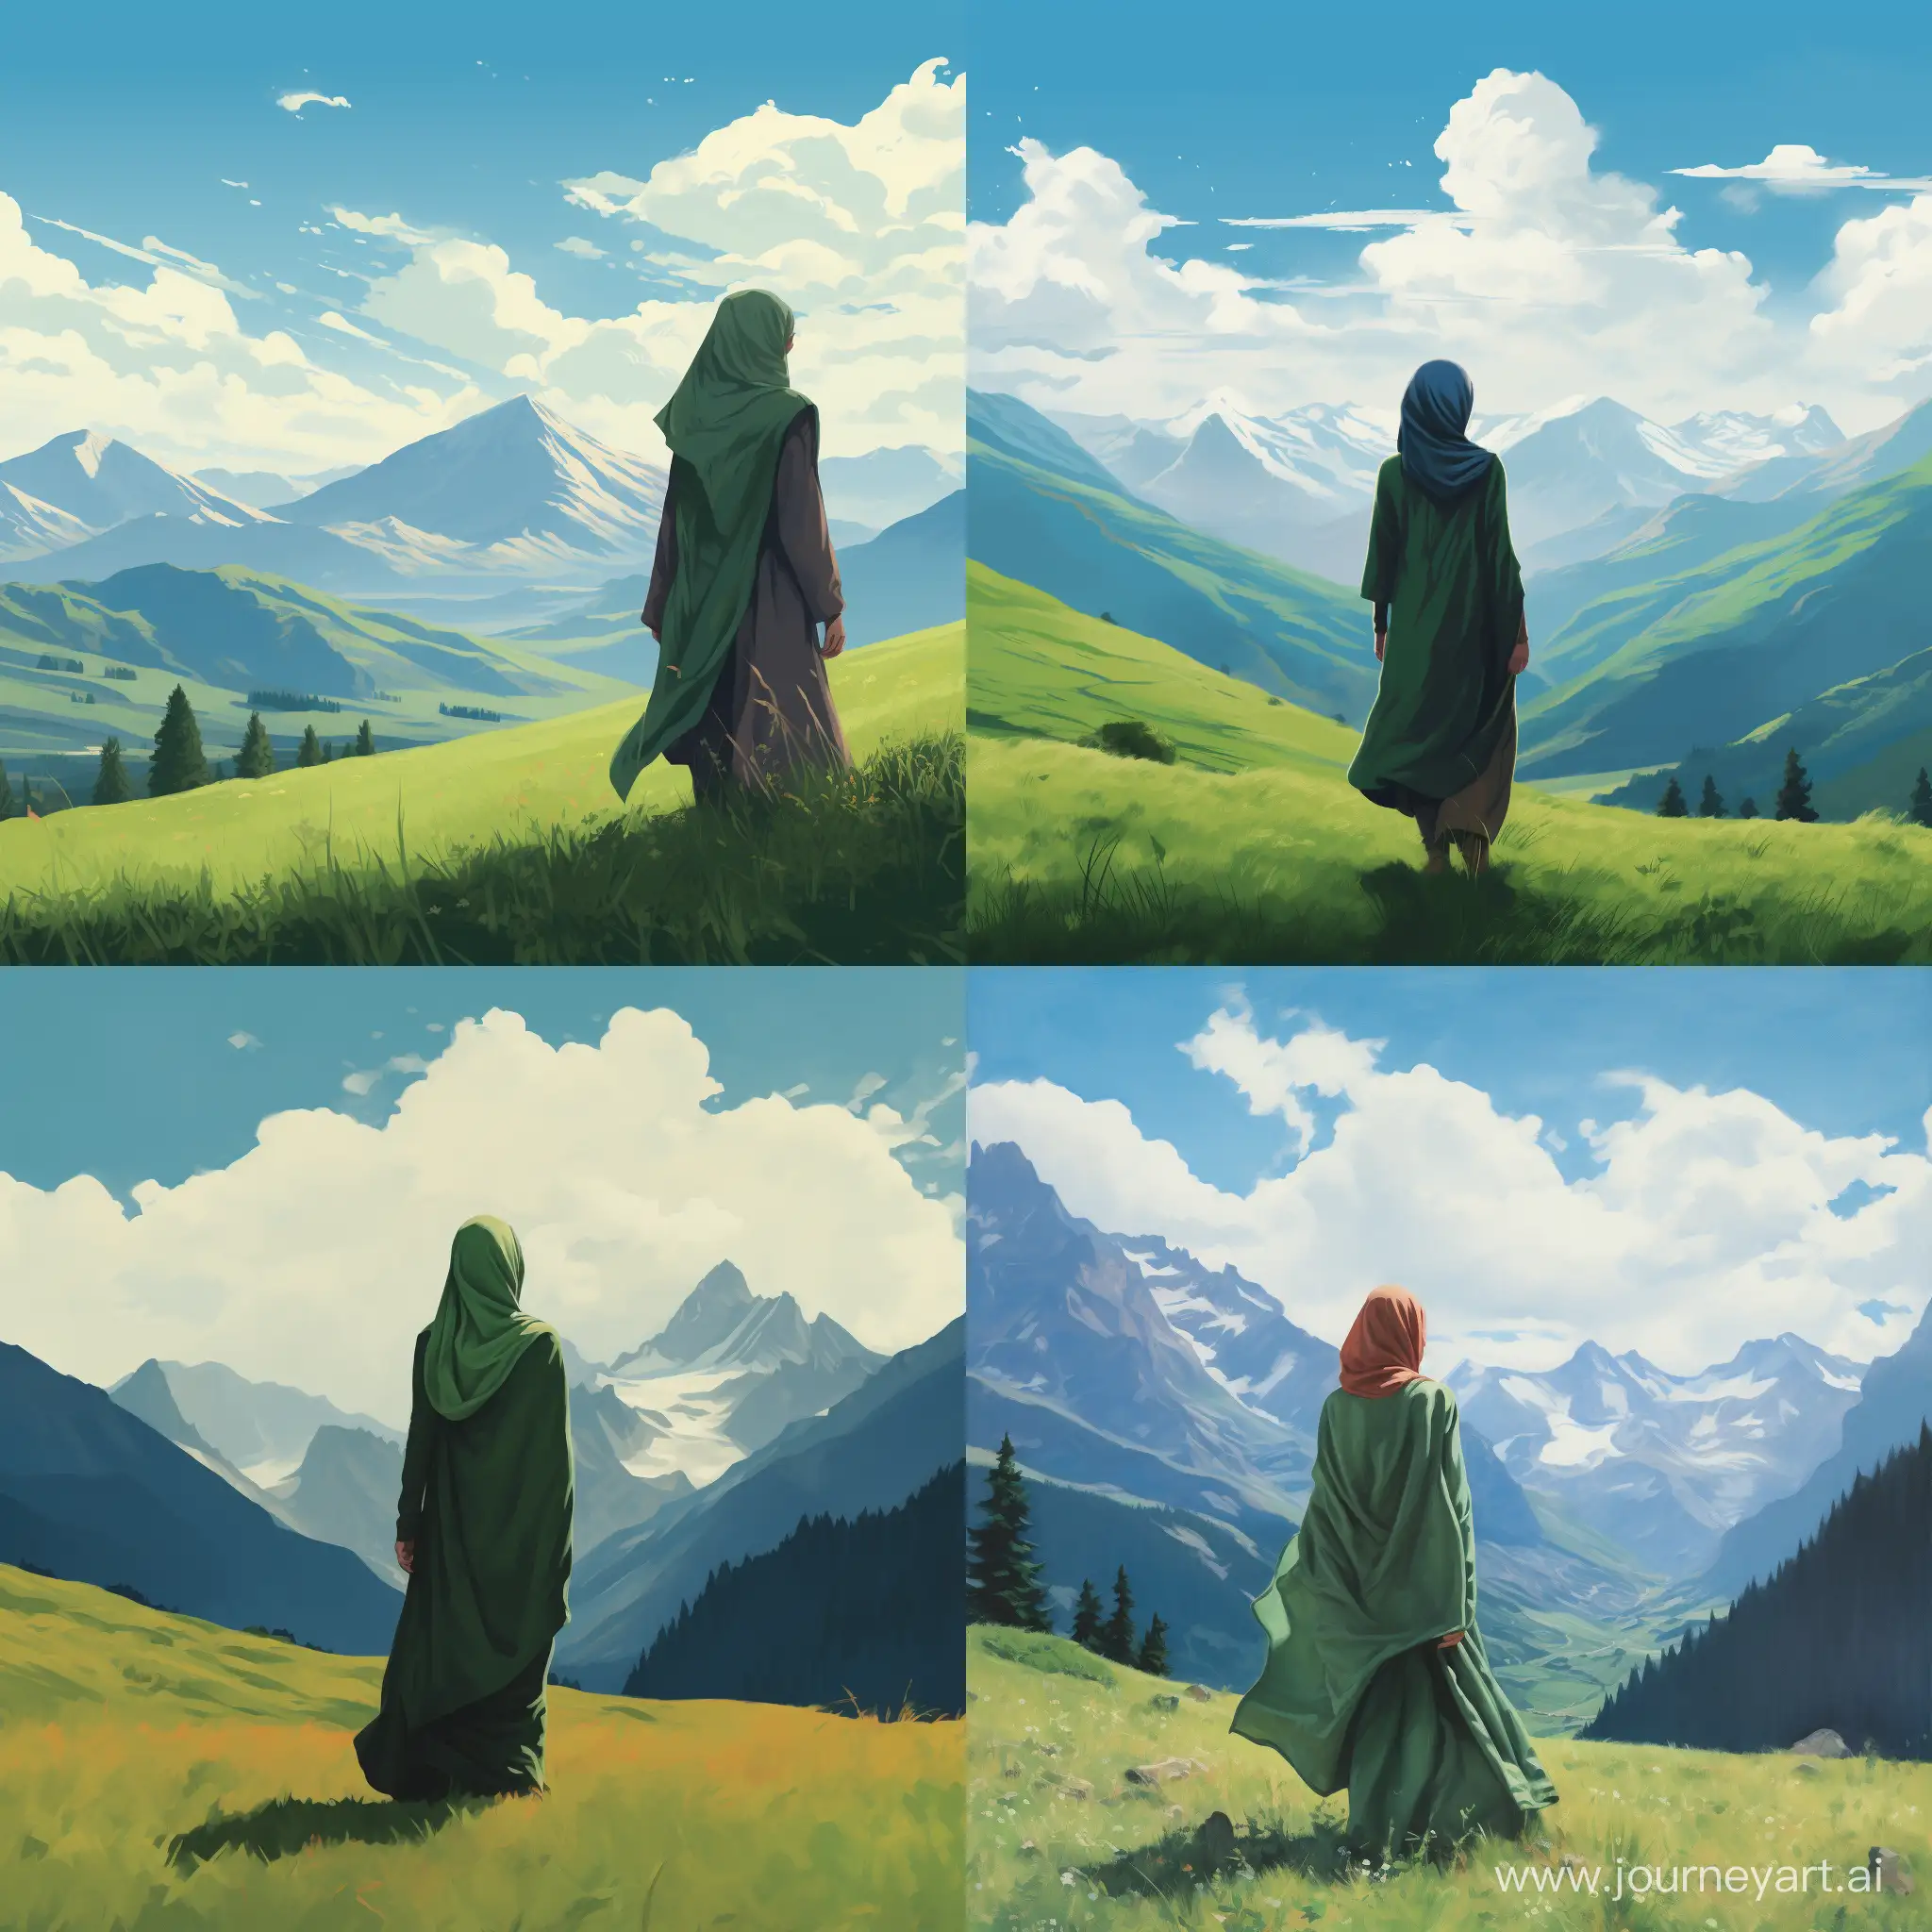 Горы высокие, между ними девушка стоит на зелёной траве, она одета в широкий хиджаб закрывающий всё тело, руки и лицо не видны, она стоит спиной и смотрит в даль, небо голубое